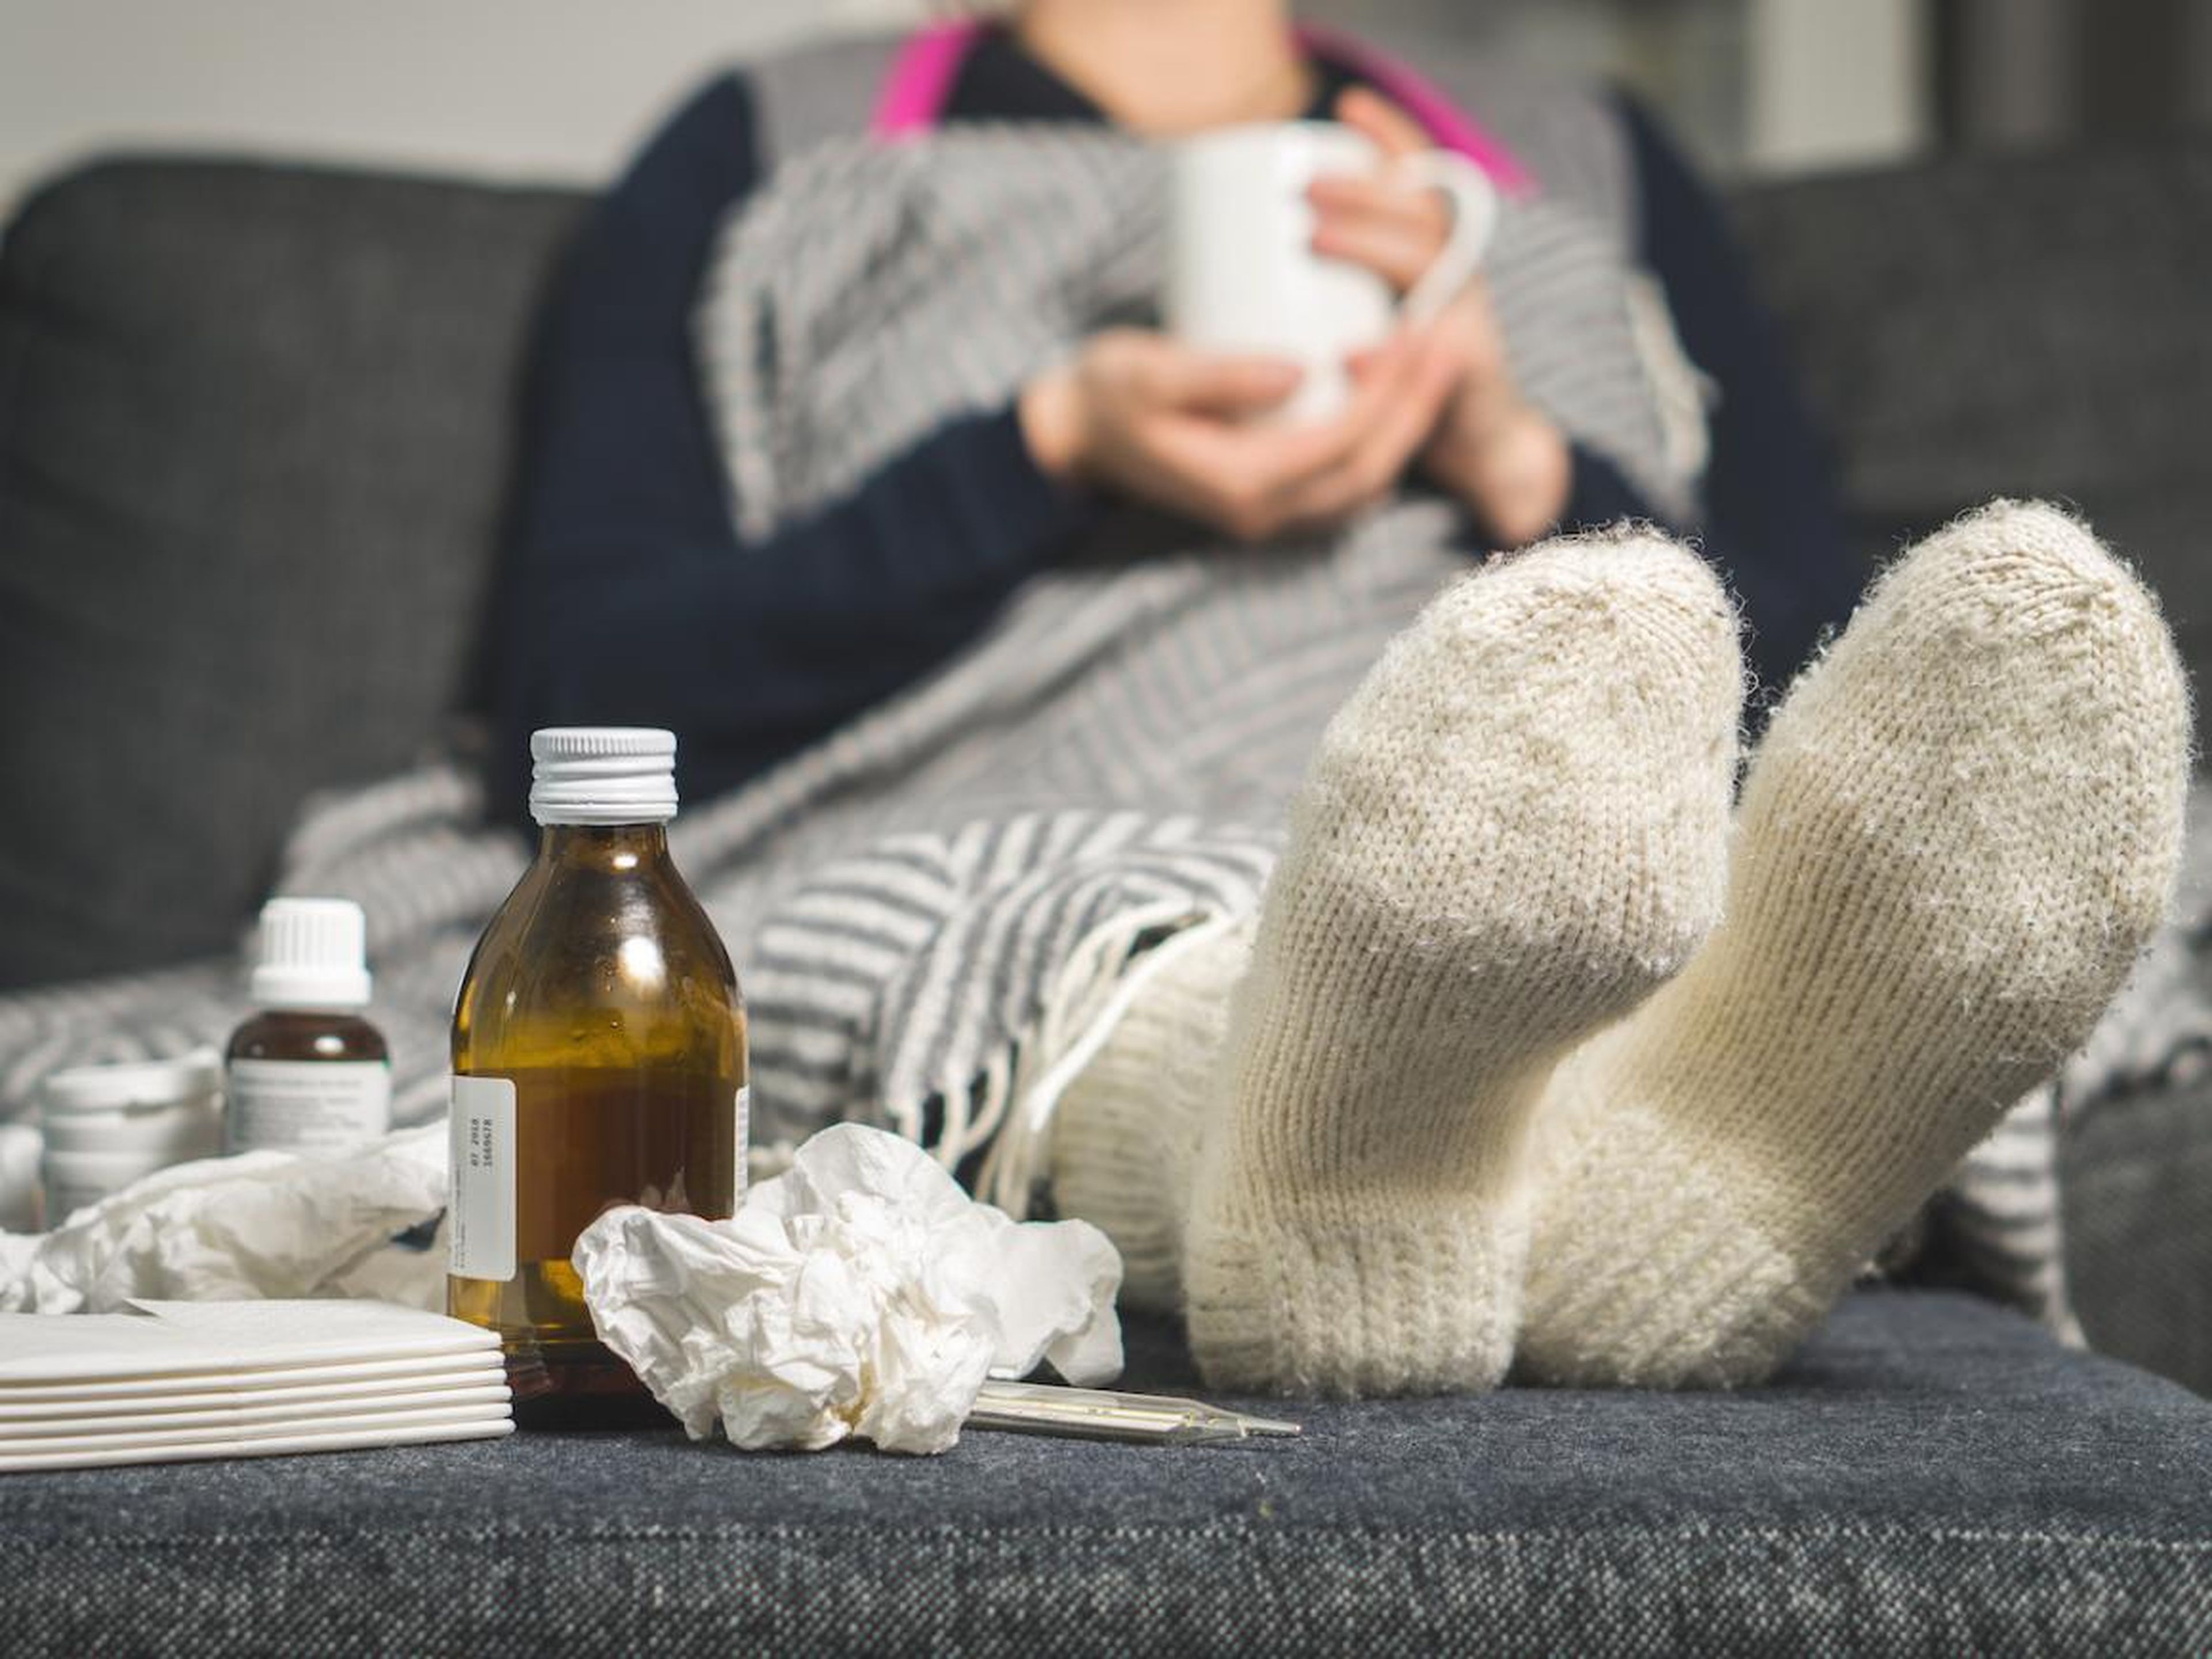 La gripe es una enfermedad, debes realizar un seguimiento de sus síntomas y de cuánto tiempo has estado enfermo